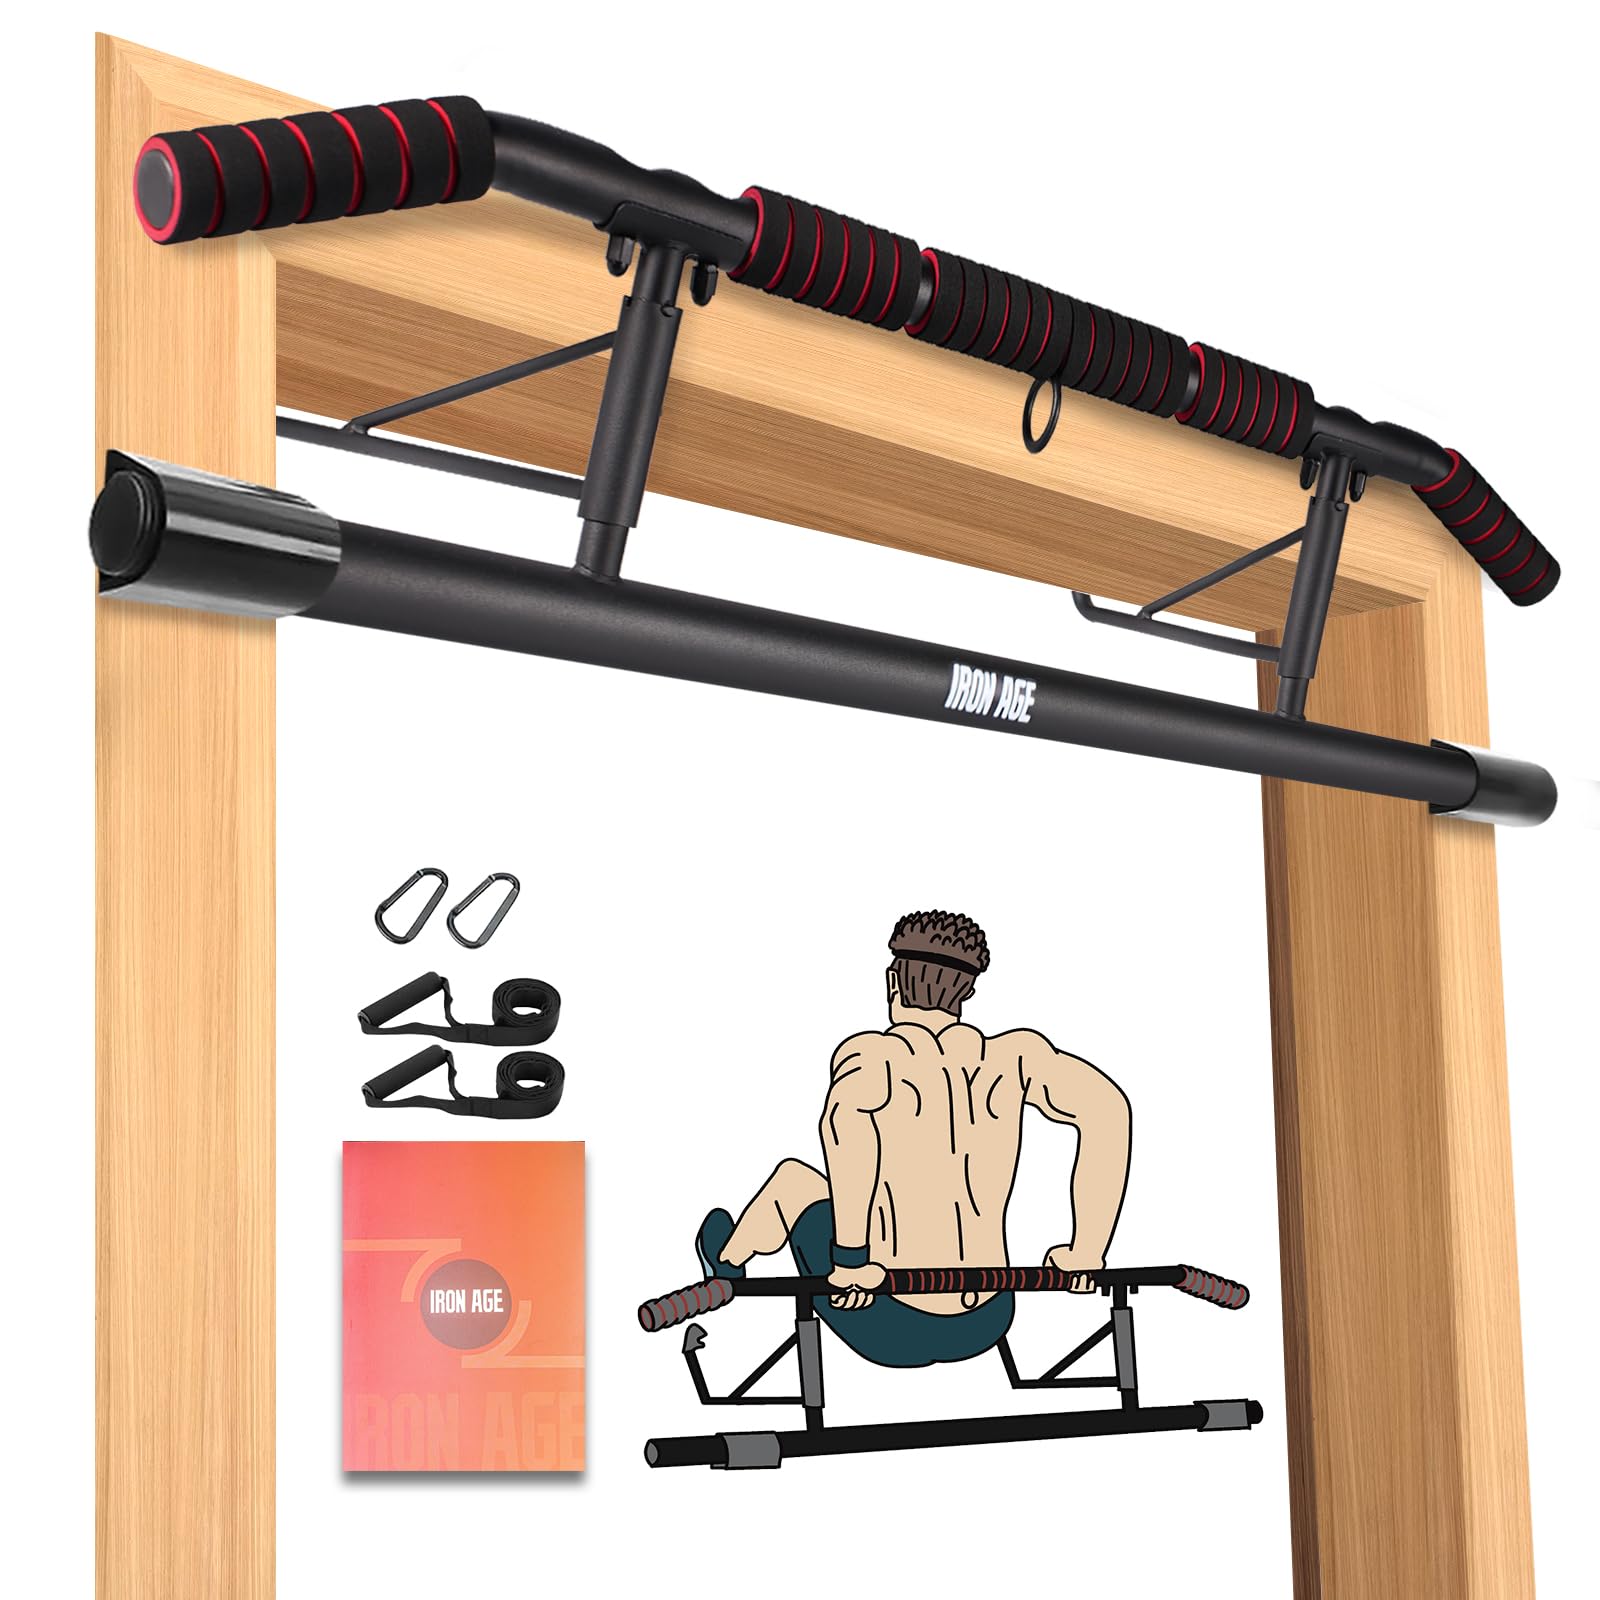 ぶら下がり健康器 マルチジム 懸垂マシン 耐荷重150kg 懸垂 器具 筋肉トレーニング 背筋 腹筋